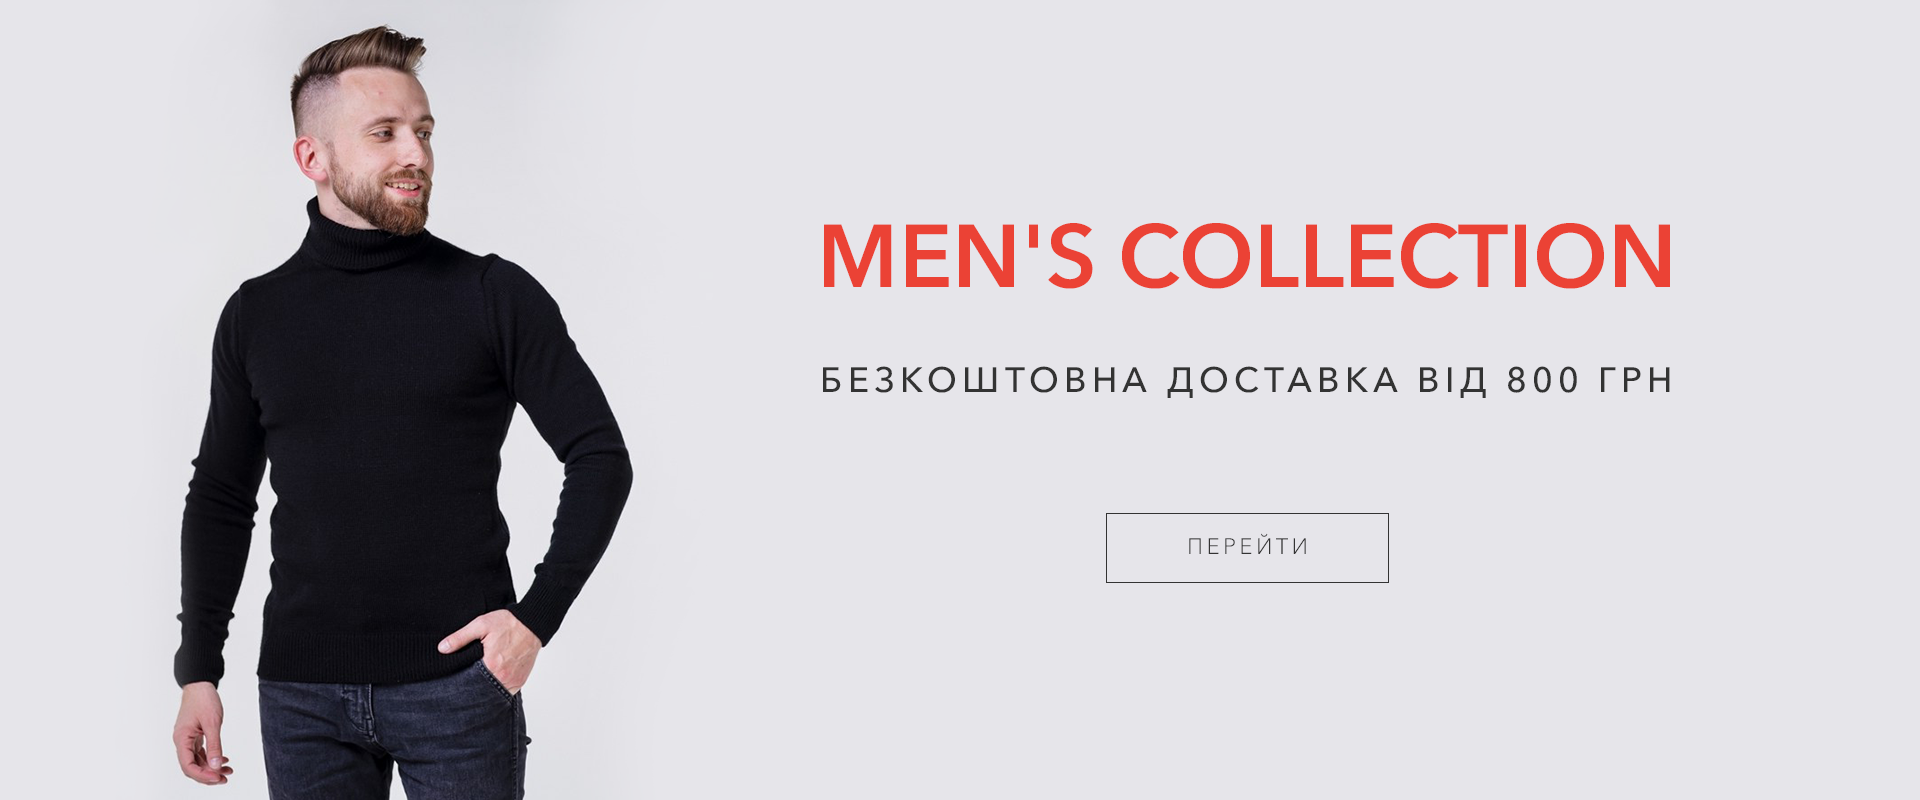 Каталог Мужской Одежды Интернет Магазин